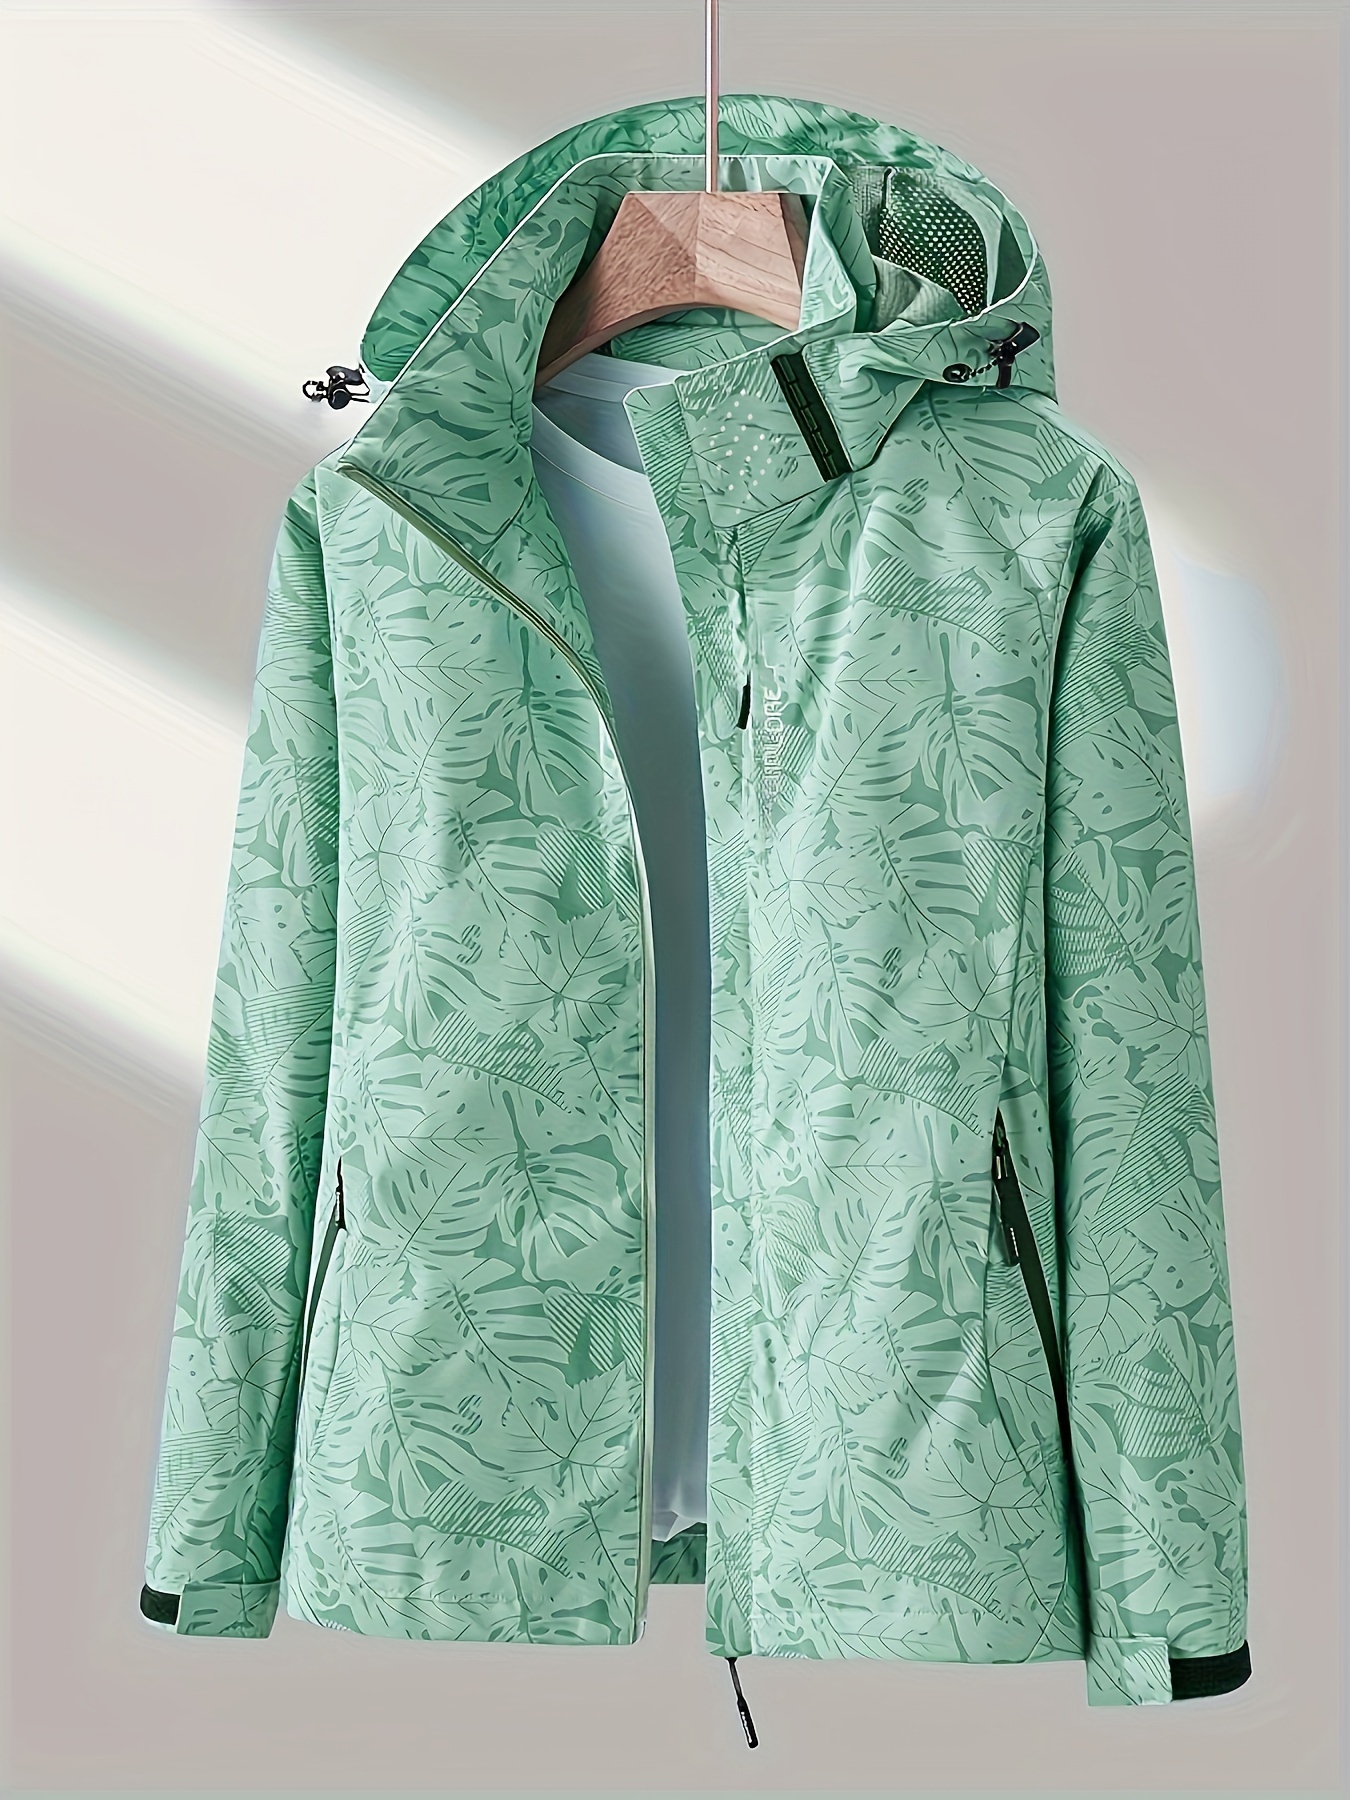 Chaqueta de camuflaje para exteriores con capucha extraíble, chaqueta cortaviento para mujer a prueba de lluvia, vestimenta para exteriores para mujer, chamarra, campera